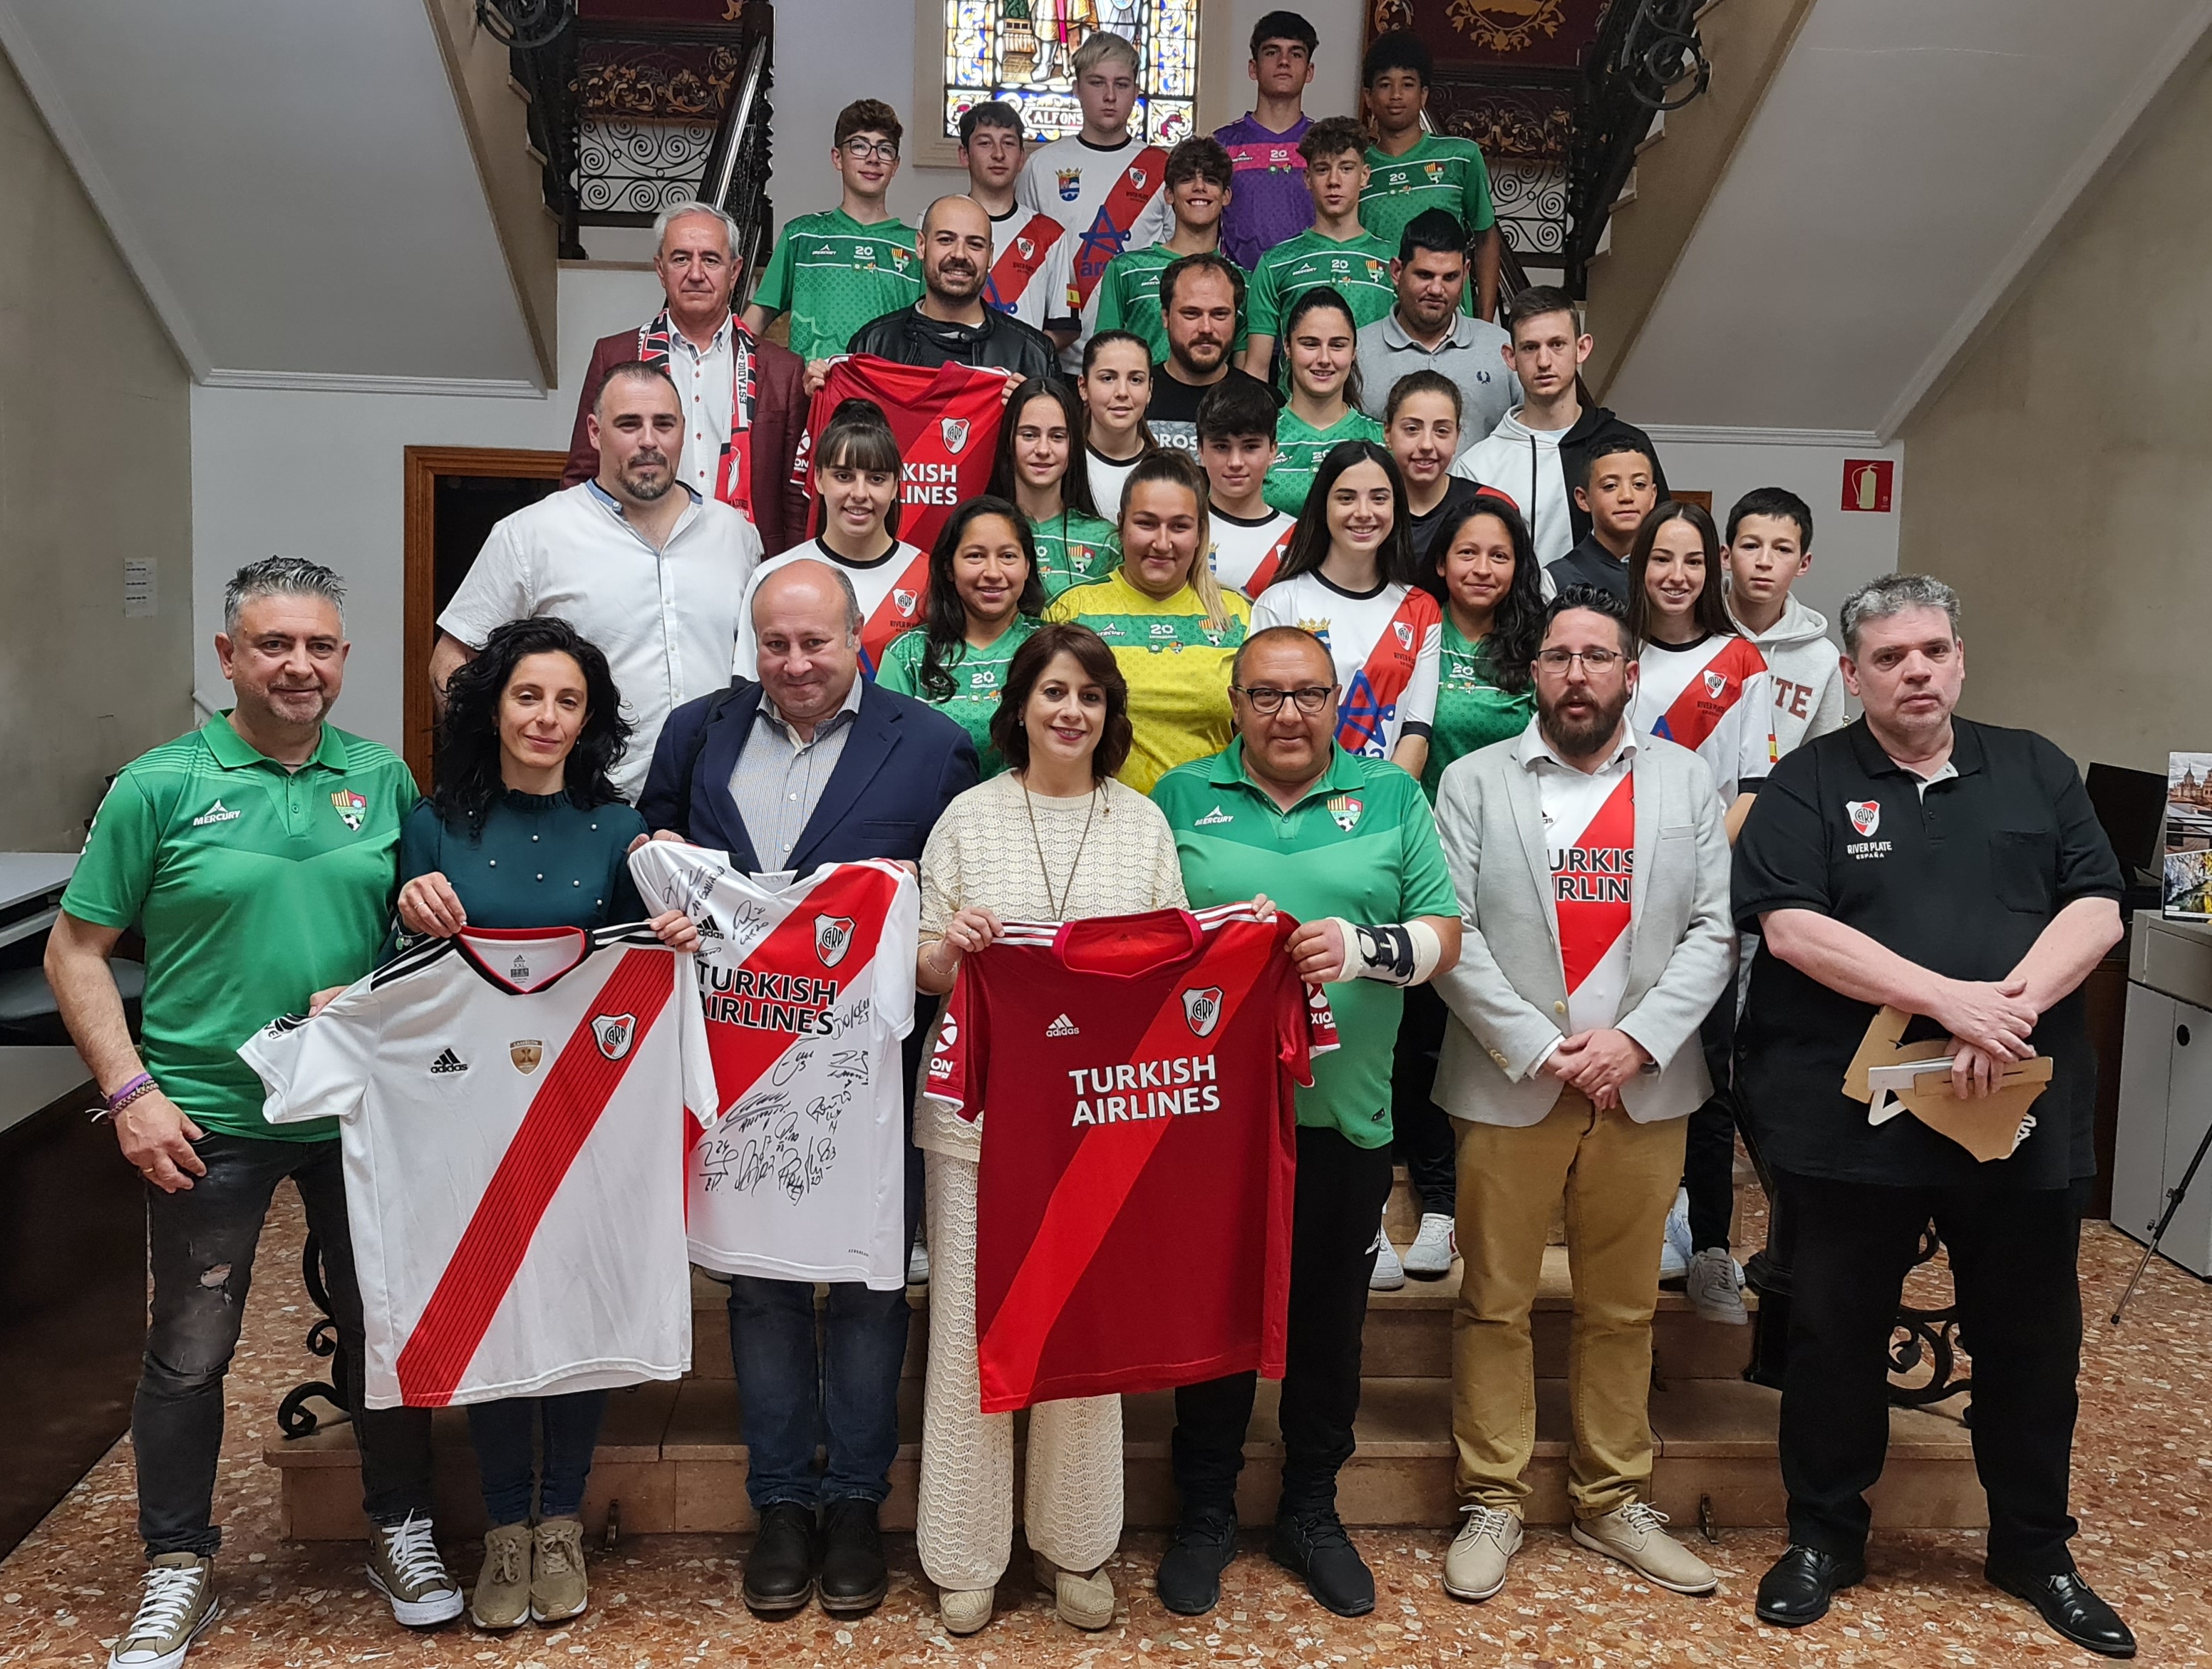 La Escuela River Plate Fuensport Teruel se pondrÃ¡ en marcha la prÃ³xima temporada